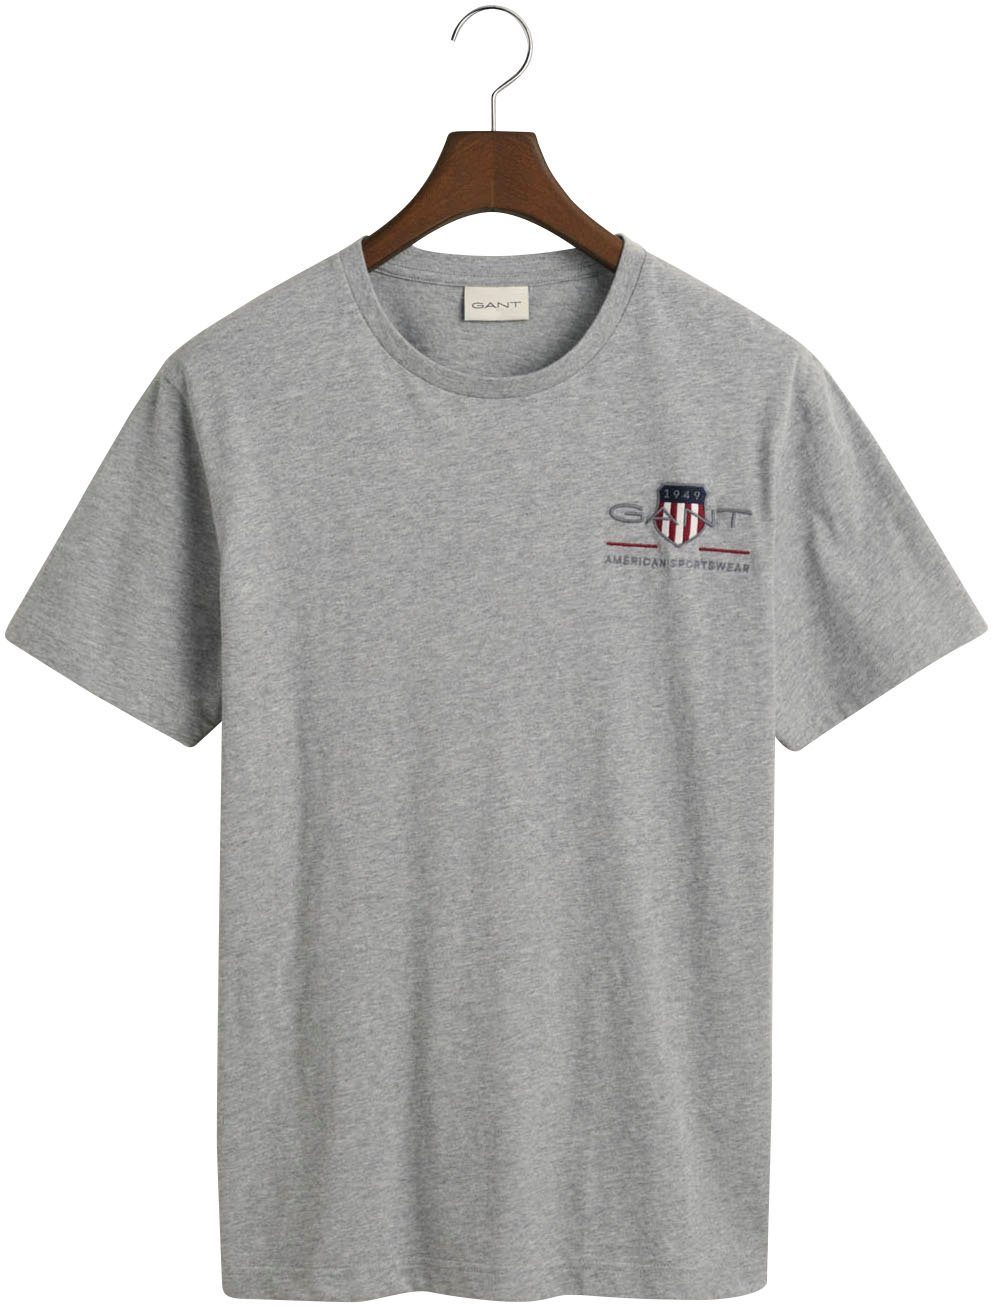 Archiv T-SHIRT melange T-Shirt inspiriert Gant SHIELD aus SS den grey dem 1980er-Jahren von REG EMB ARCHIVE